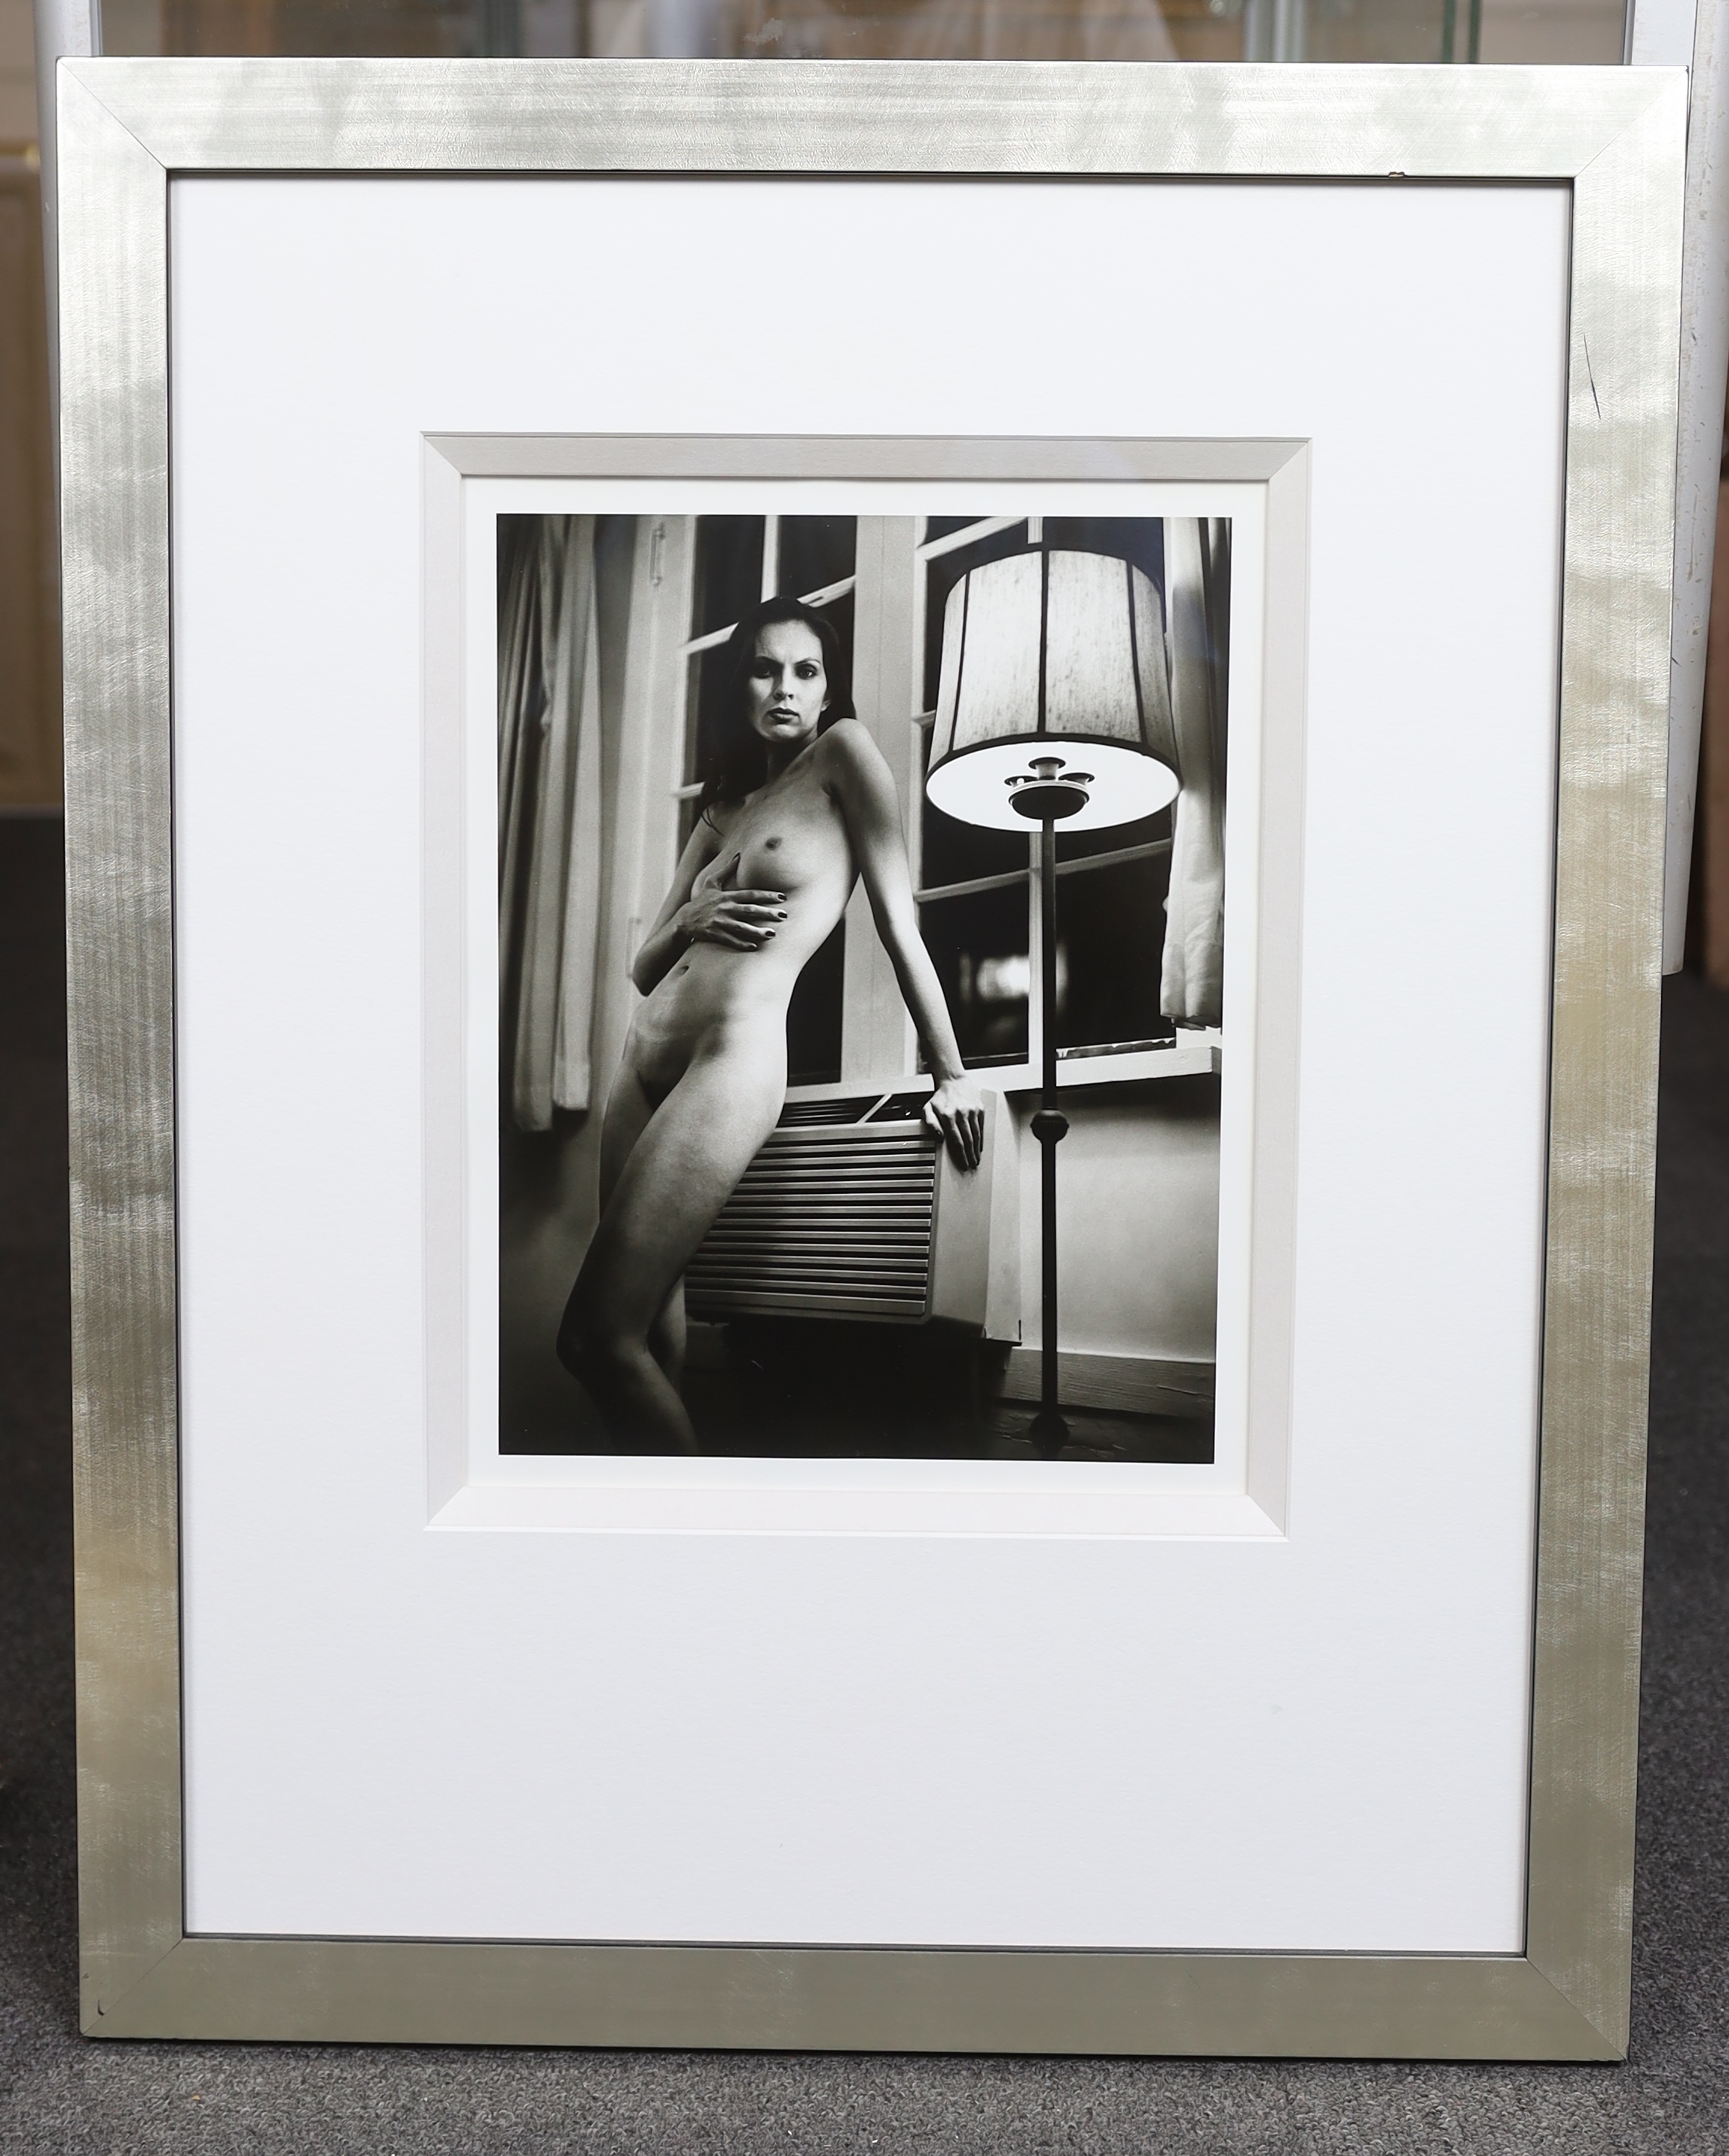 Helmut Newton (Australian, 1920-2004), Cyberwomen 6, gelatin silver print, 2000